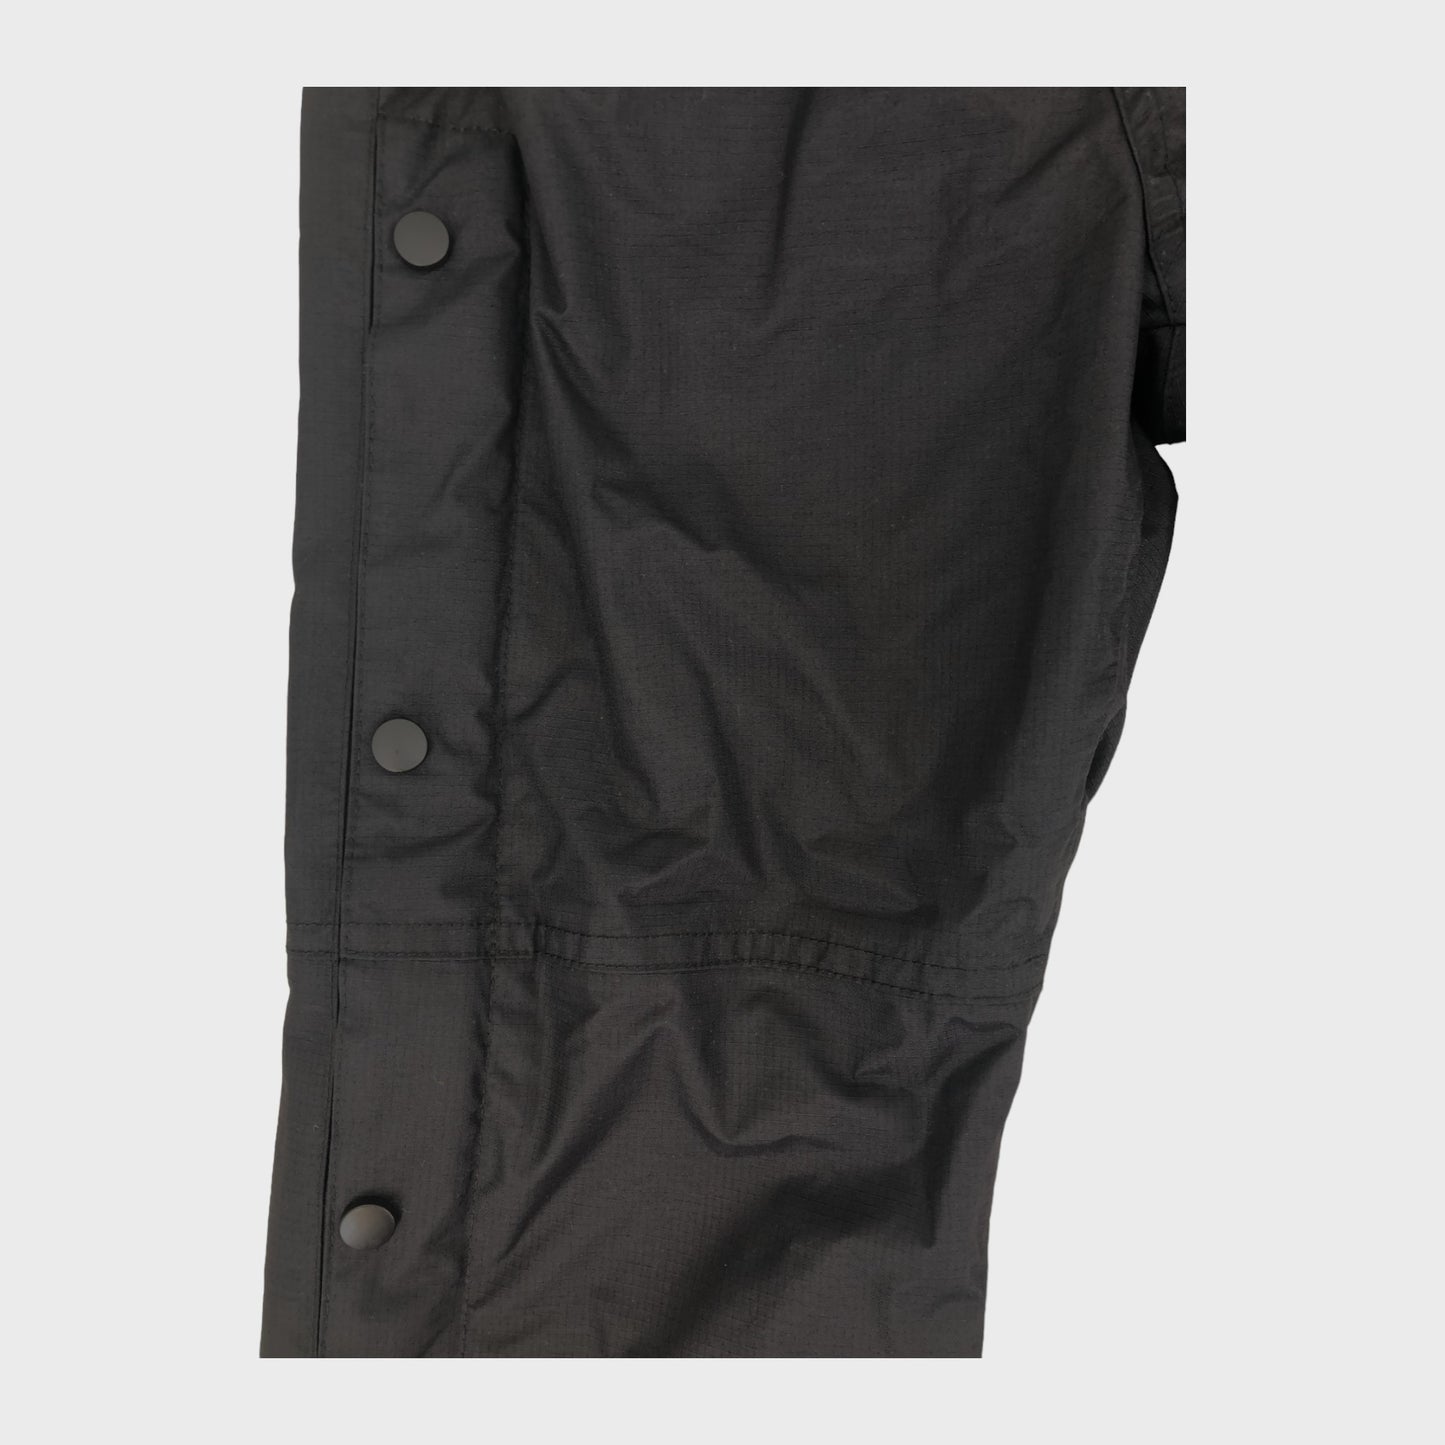 Black Branded Waterproof Trousers